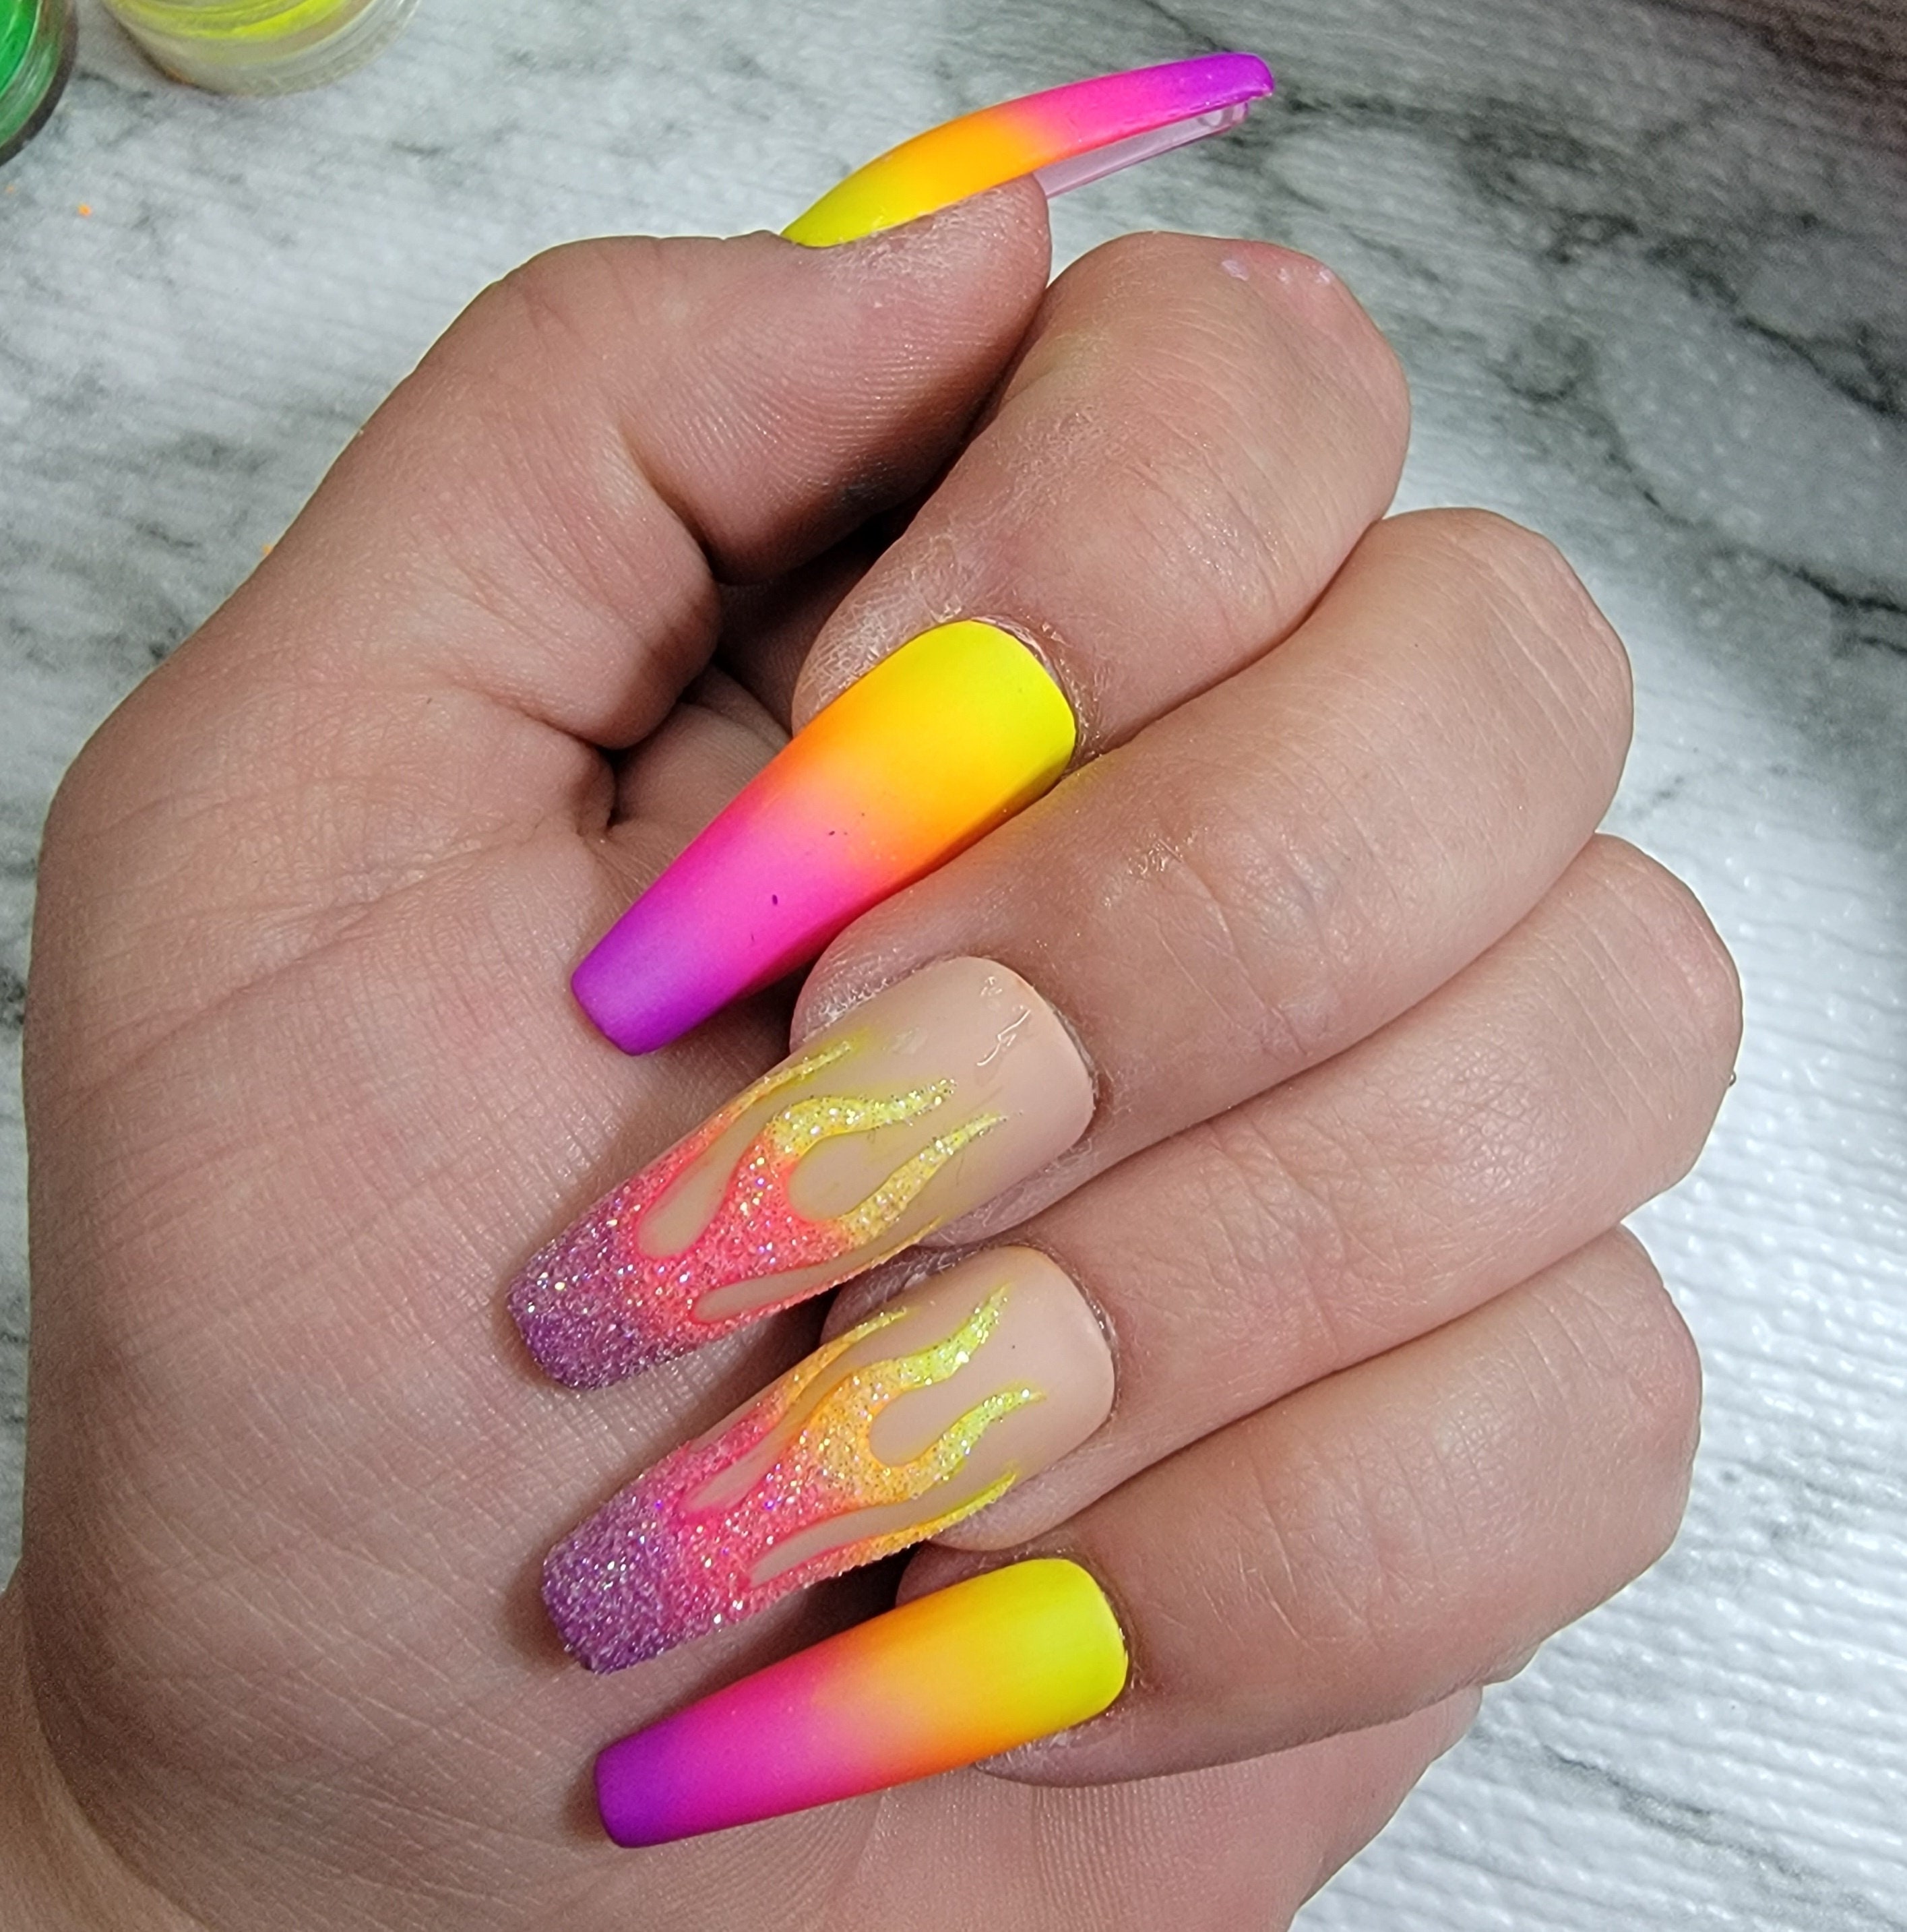 Neon nails là một xu hướng nail art được yêu thích nhất trong năm